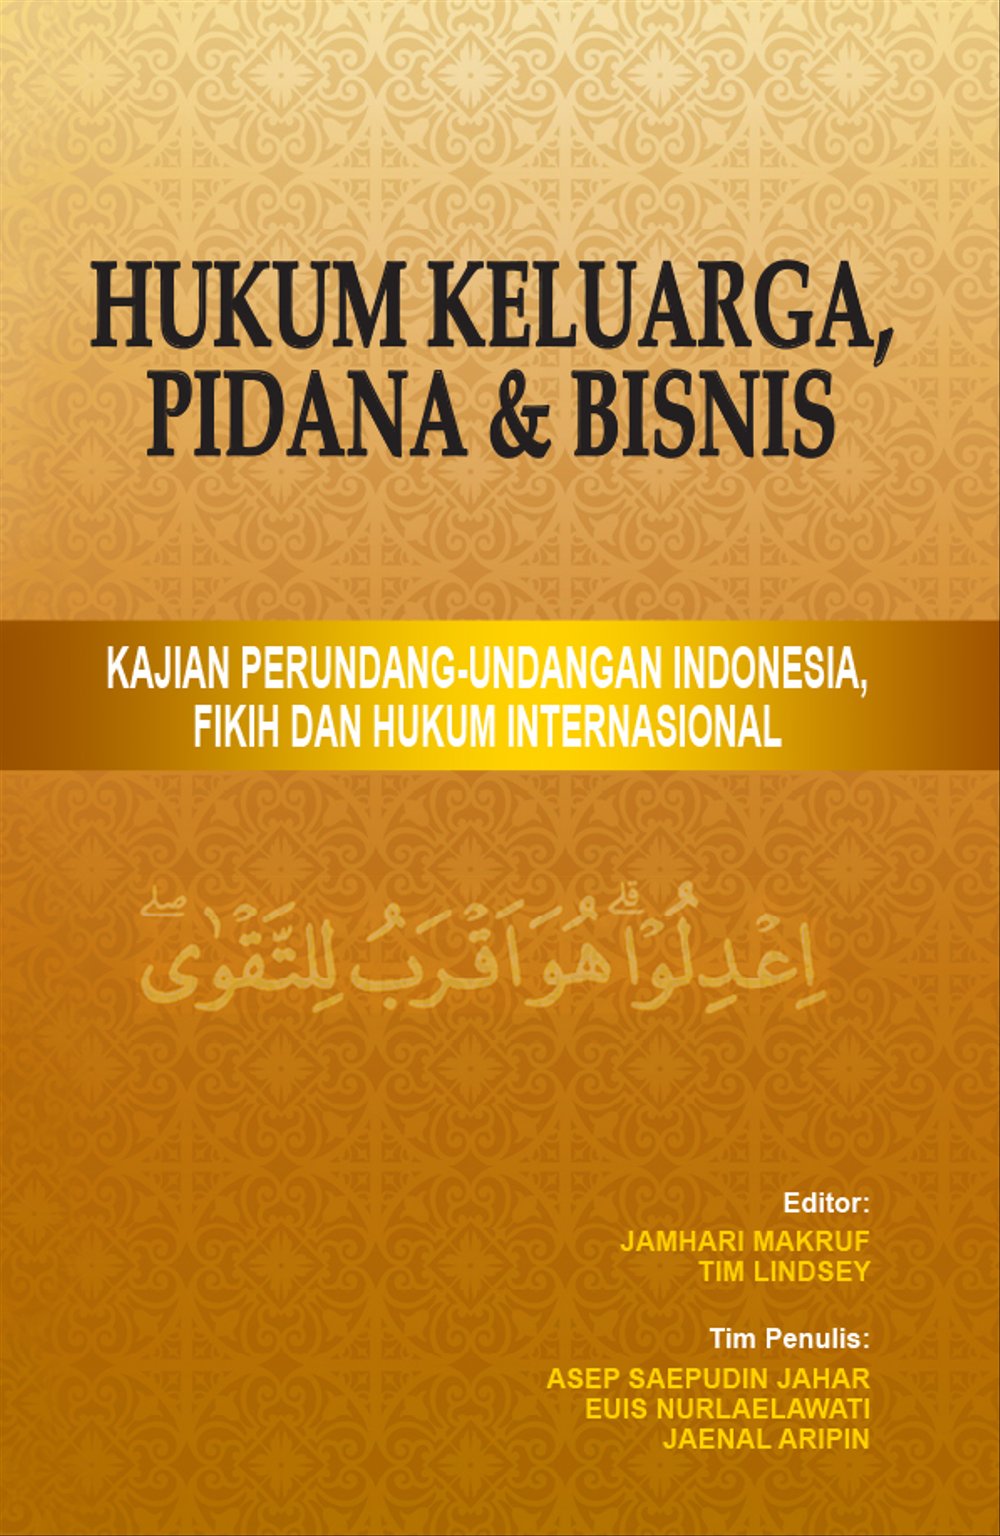 HUKUM KELUARGA, PIDANA & BISNIS-Kajian Perundang-undangan Indonesia, FIkih dan Hukum Internasional